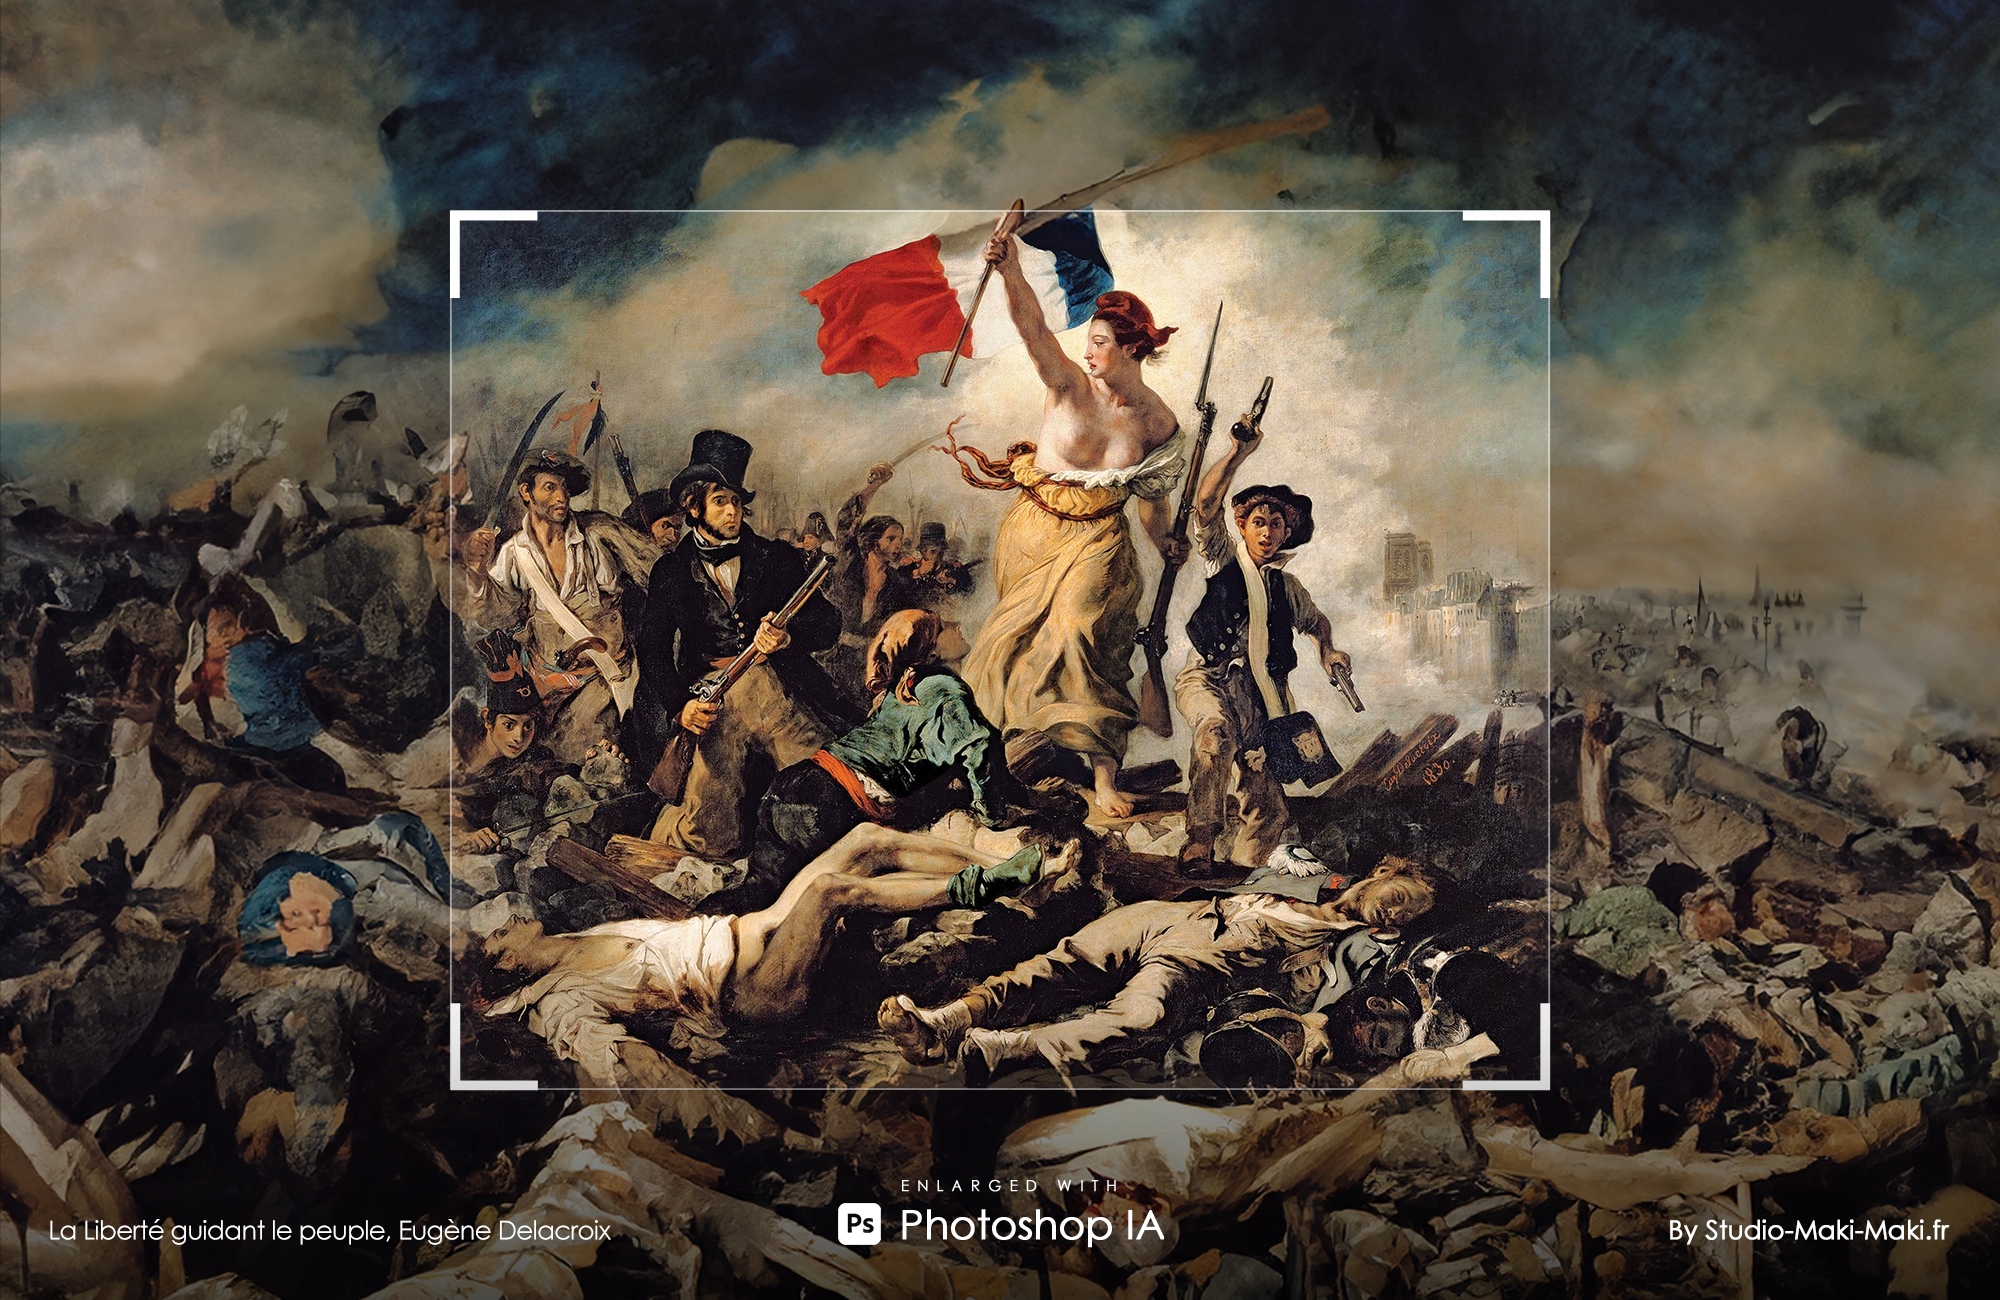 La Liberté guidant le peuple, Eugène Delacroix - Enlarged with Photoshop IA - By Studio Maki Maki